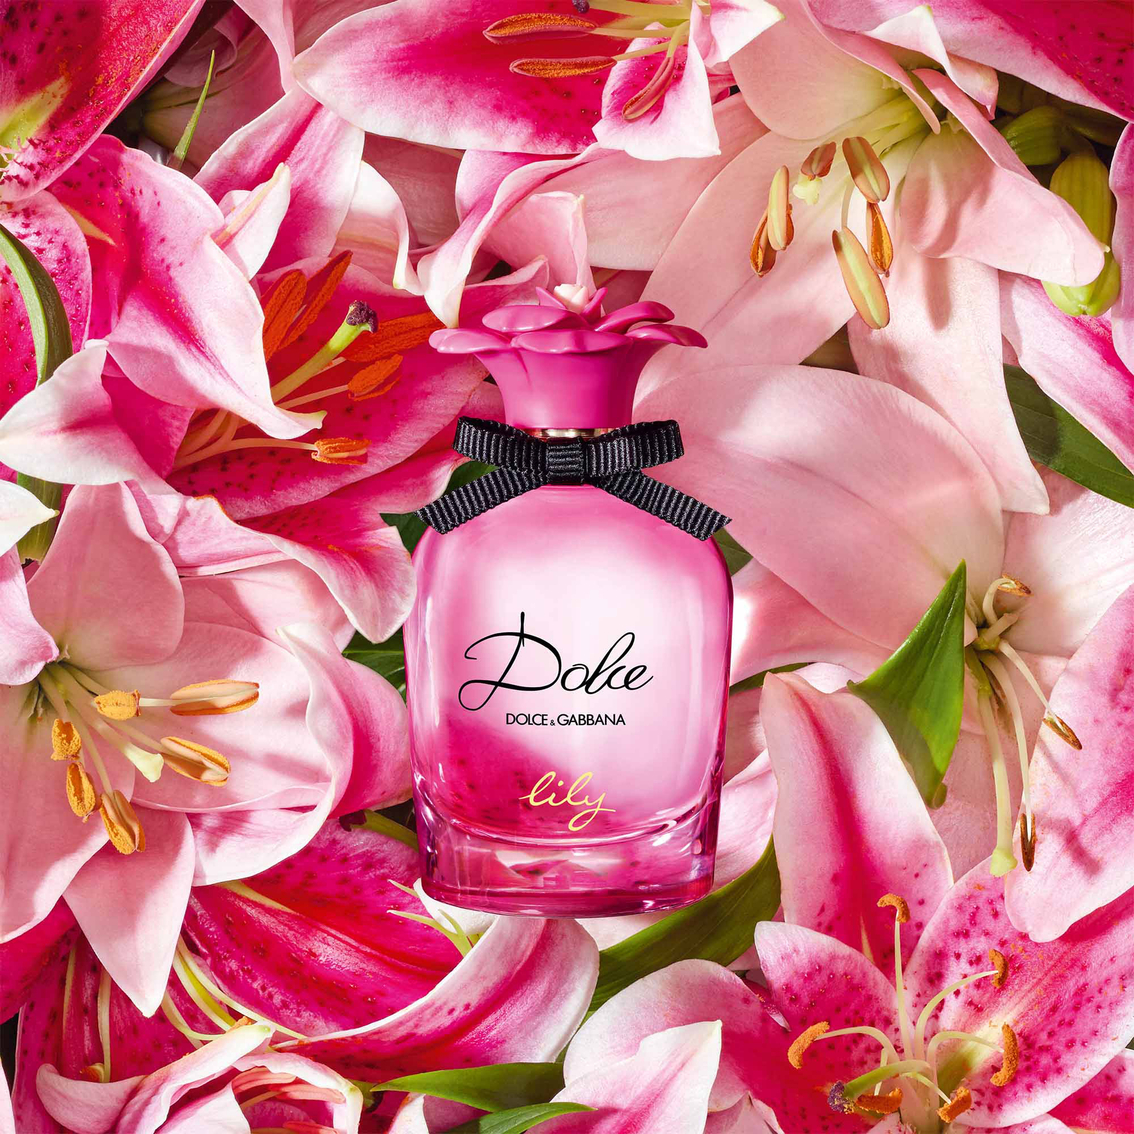 Dolce & Gabbana Dolce Lily Eau De Toilette - Image 4 of 5